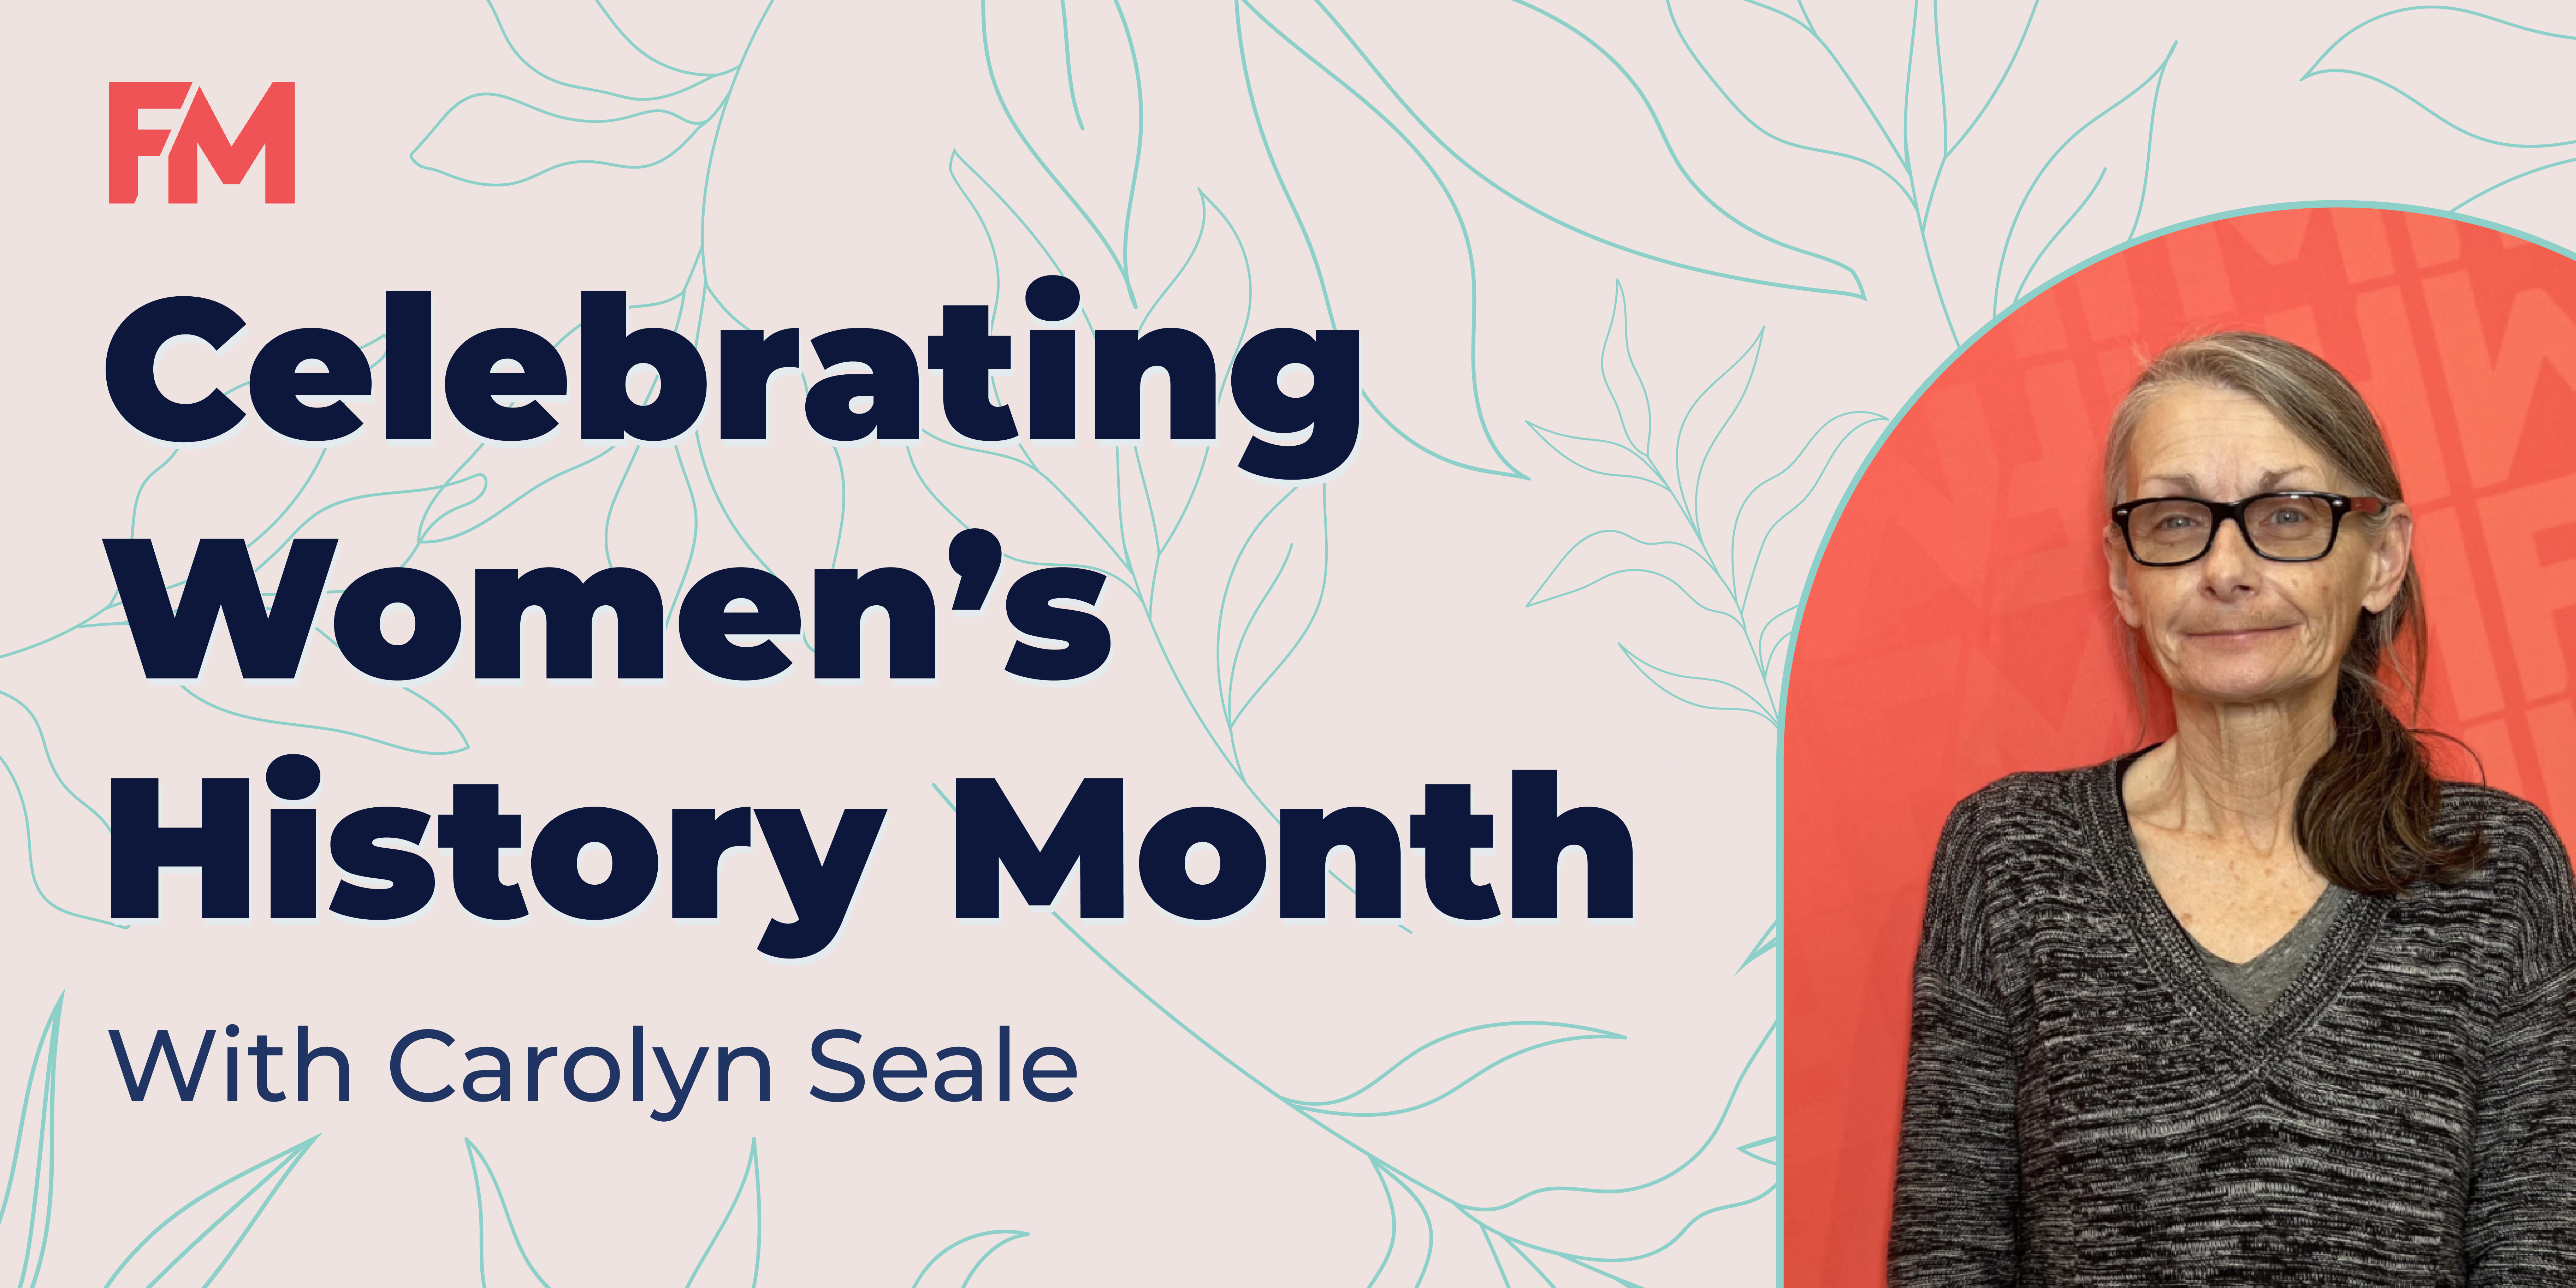 Women's History Month - Carolyn Seale